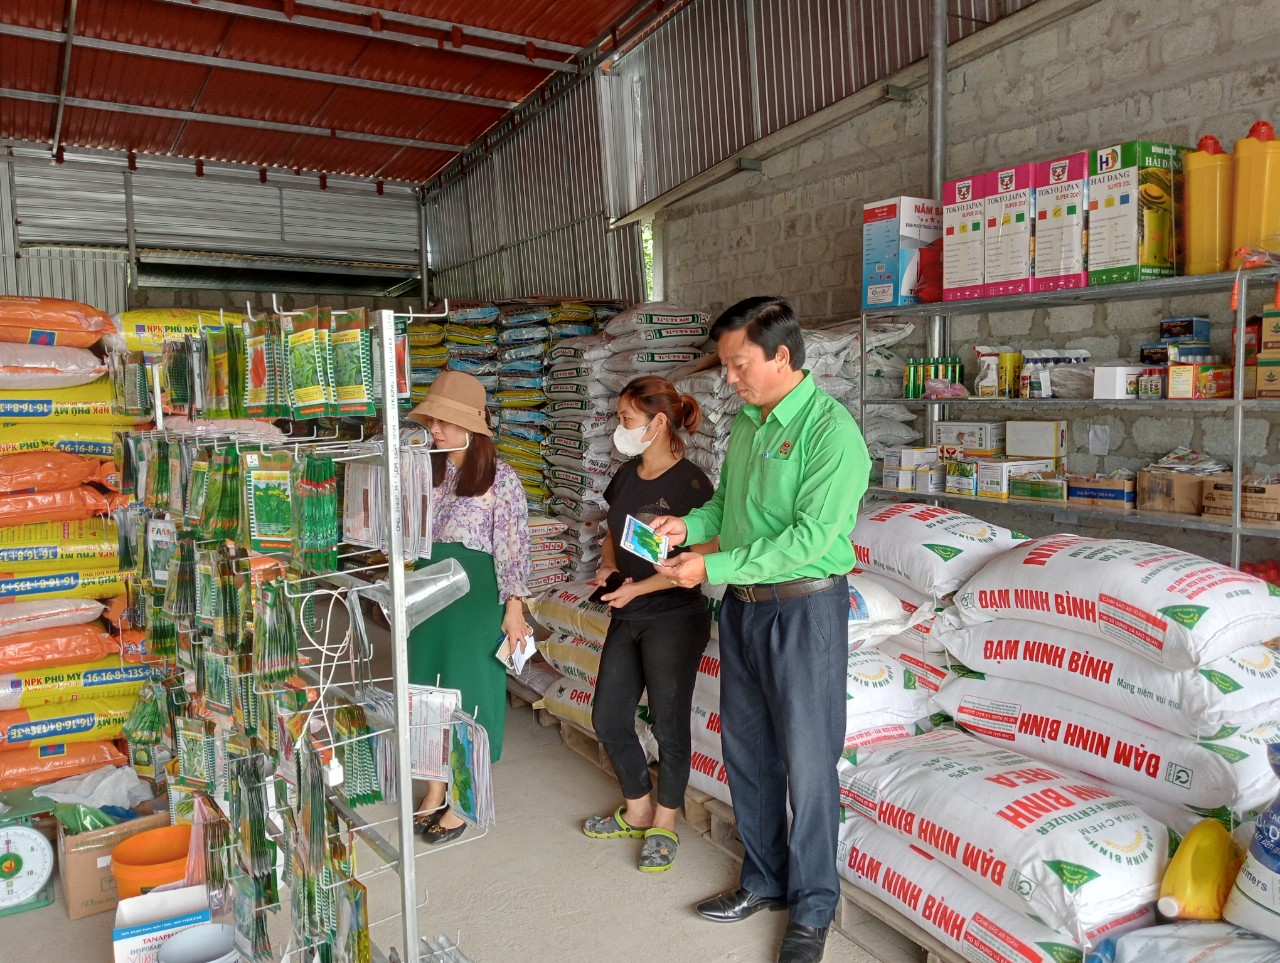 Đoàn giám sát tại cơ sở kinh doanh phân bón vô cơ và thuốc bảo vệ thực vật tại Thị trấn